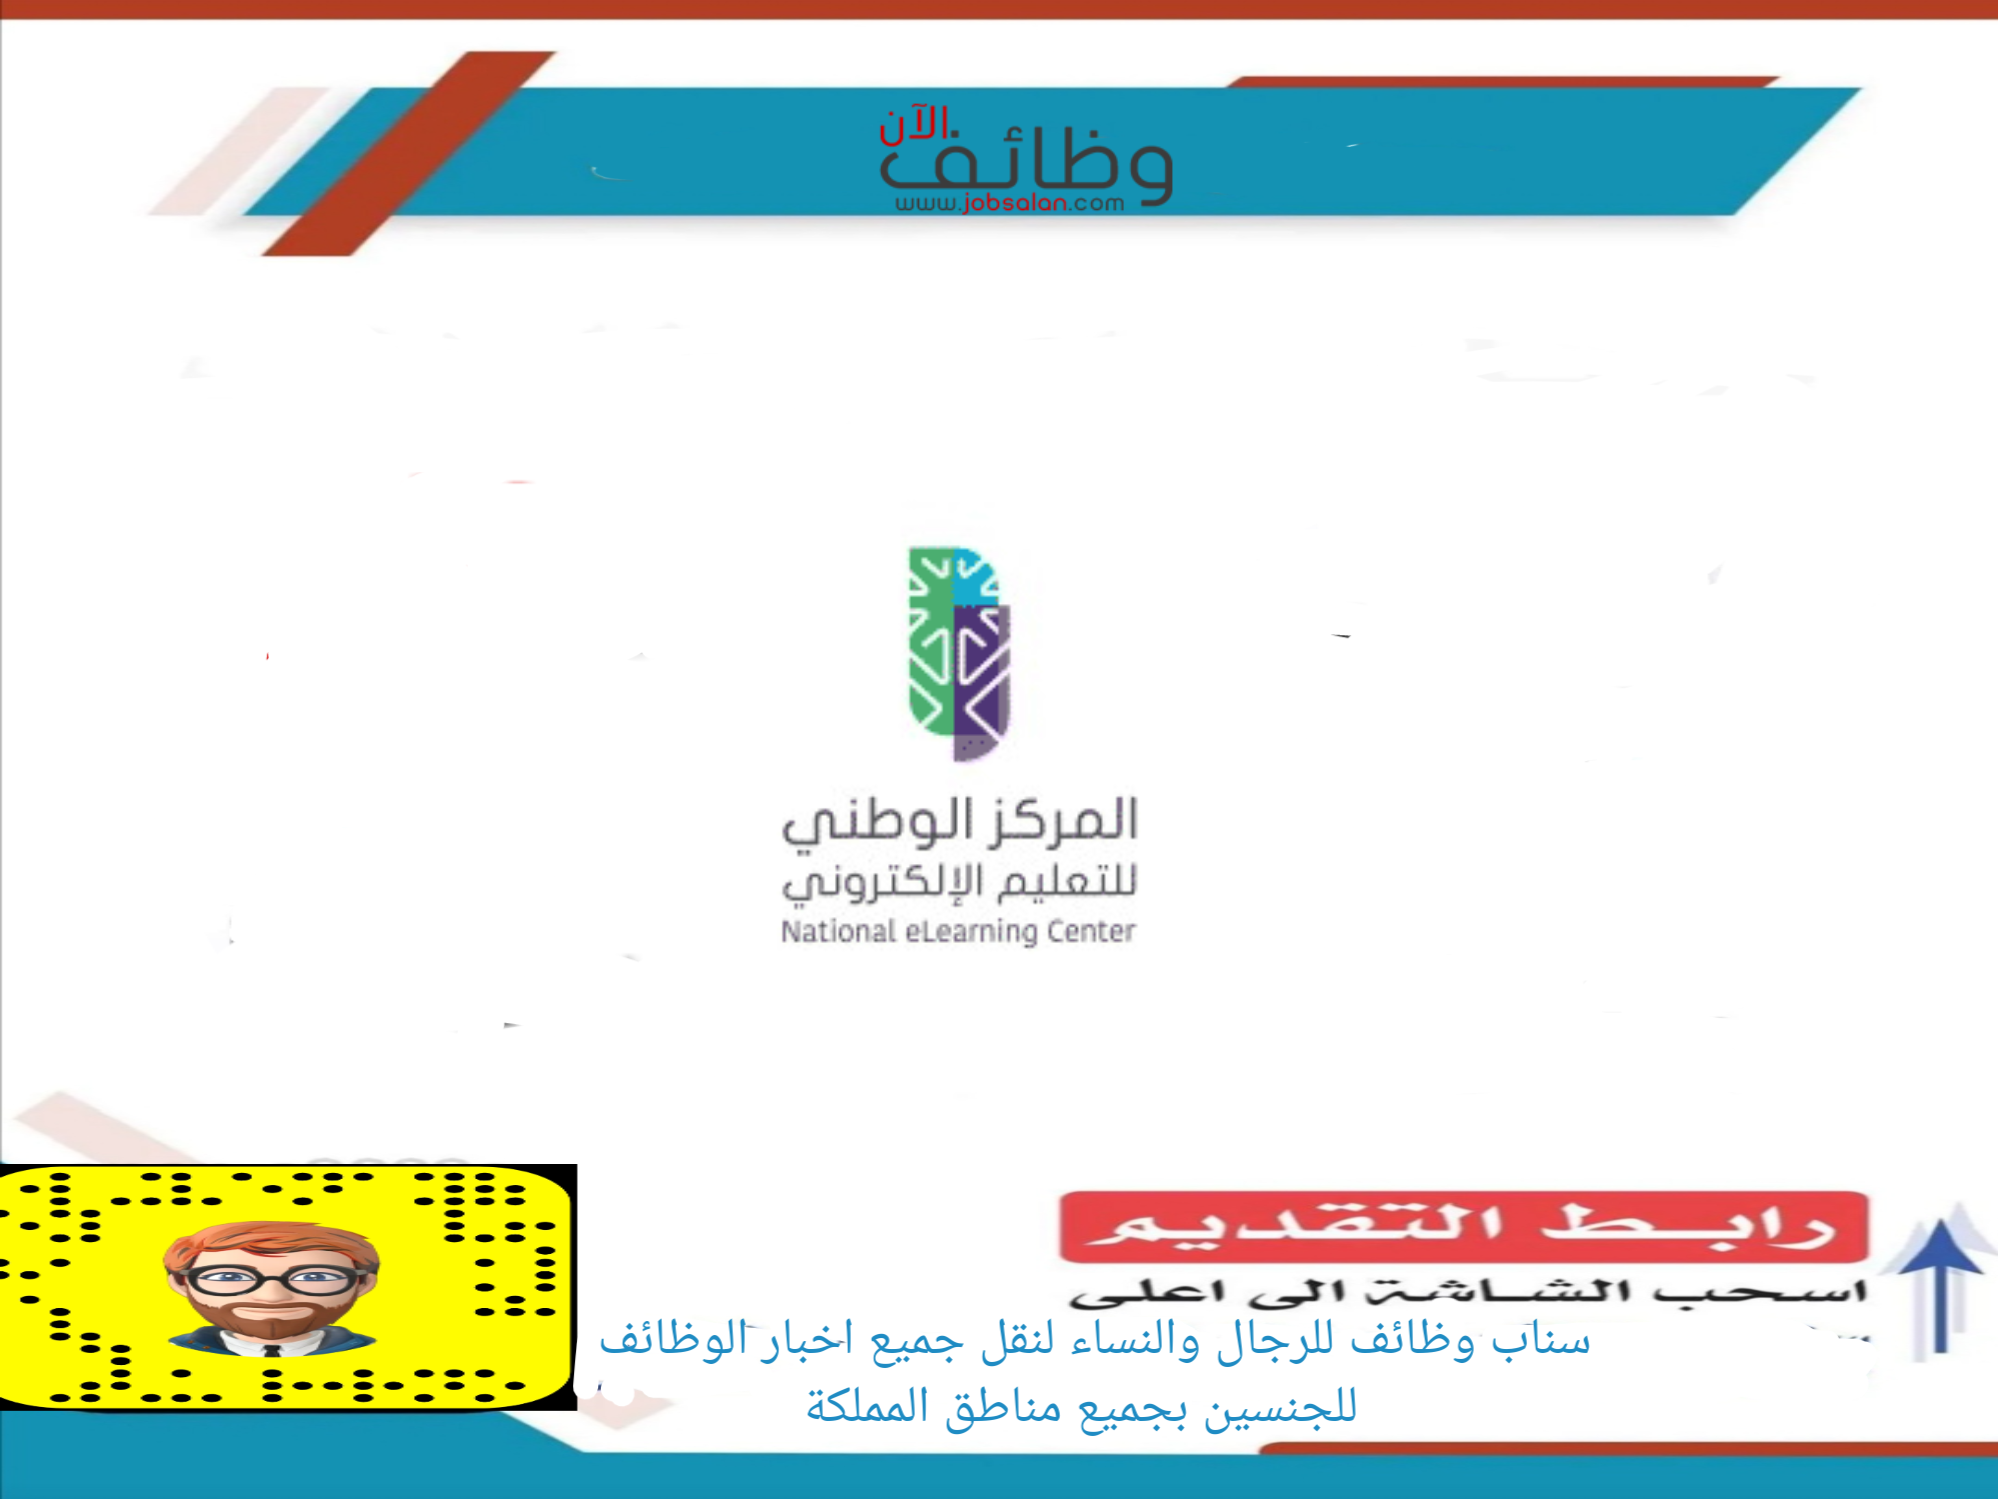 المركز الوطني للتعليم الإلكتروني 1 - مطلوب مطوّر أعمال في المركز الوطني للتعليم الإلكتروني - الرياض